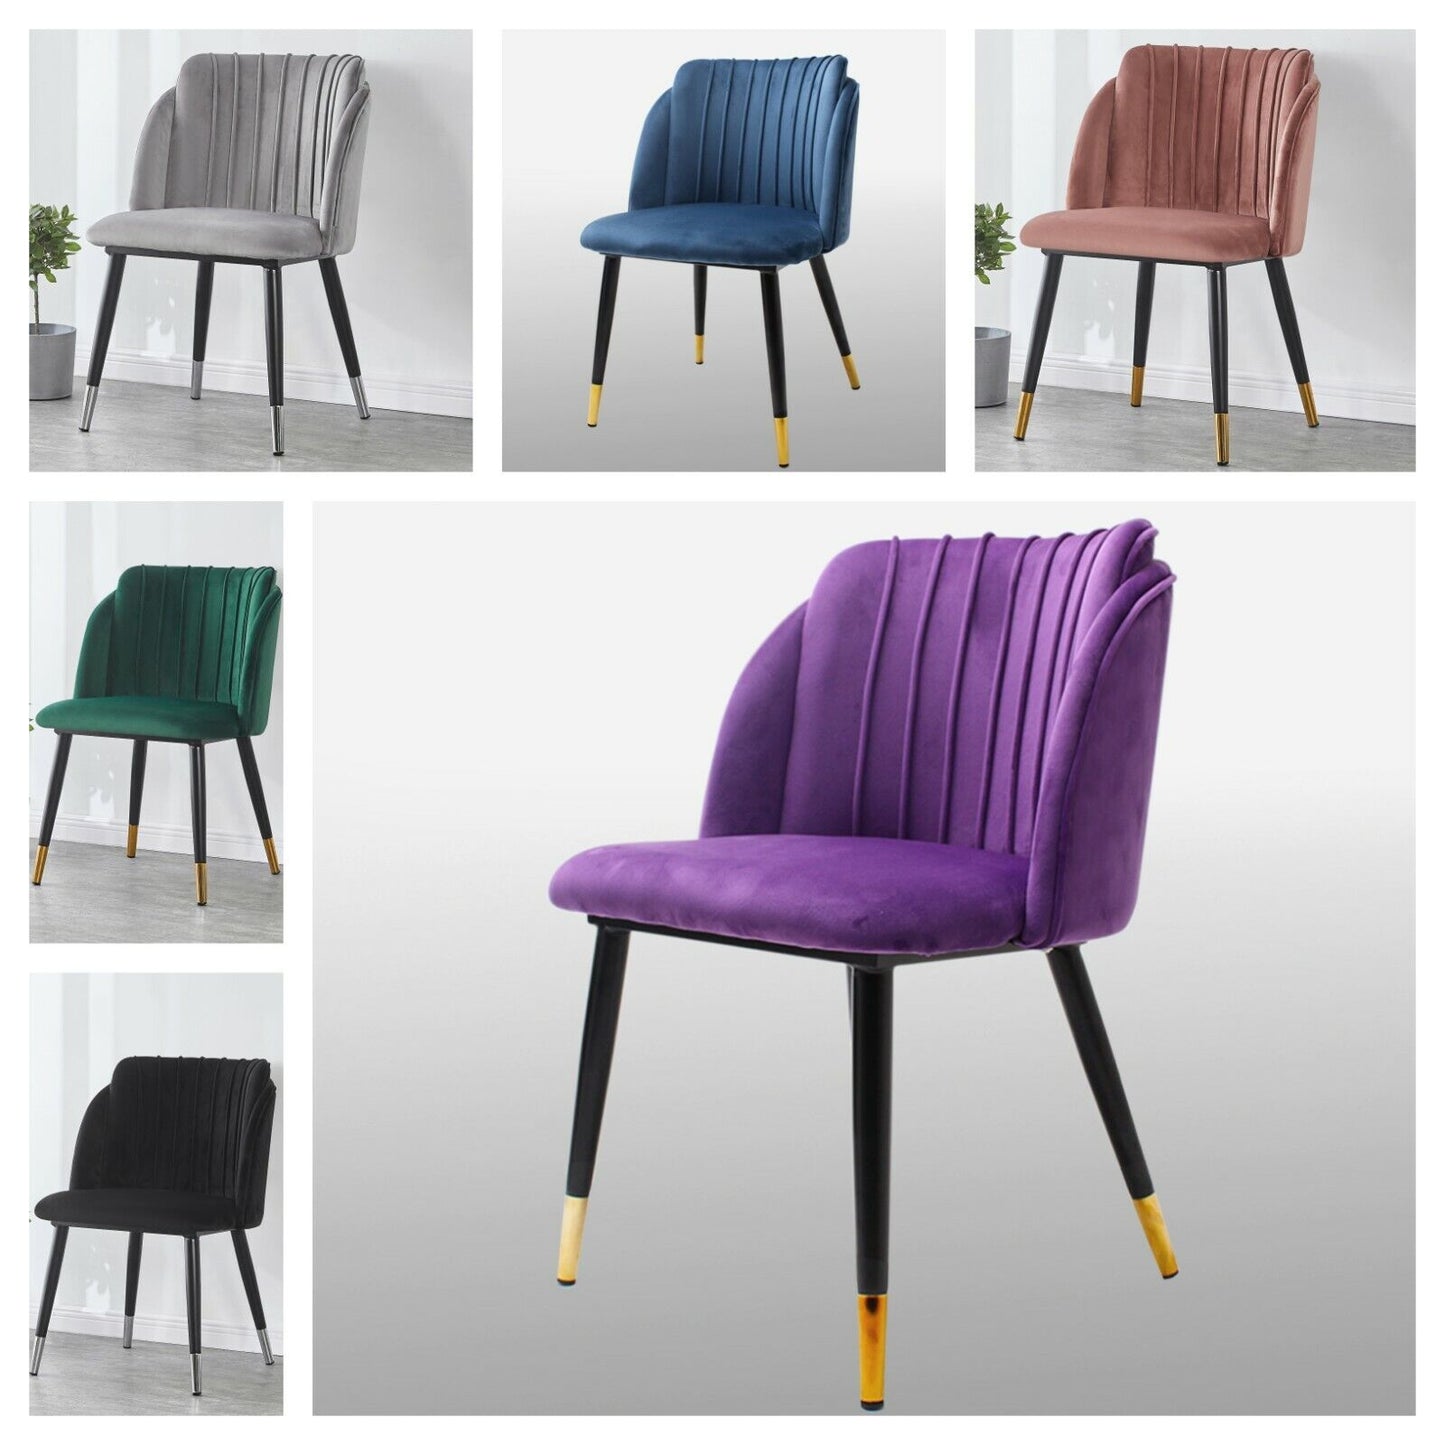 Chaise rembourrée moderne -VITALY Chaises de salle à manger glamour chaise restaurant chaise café